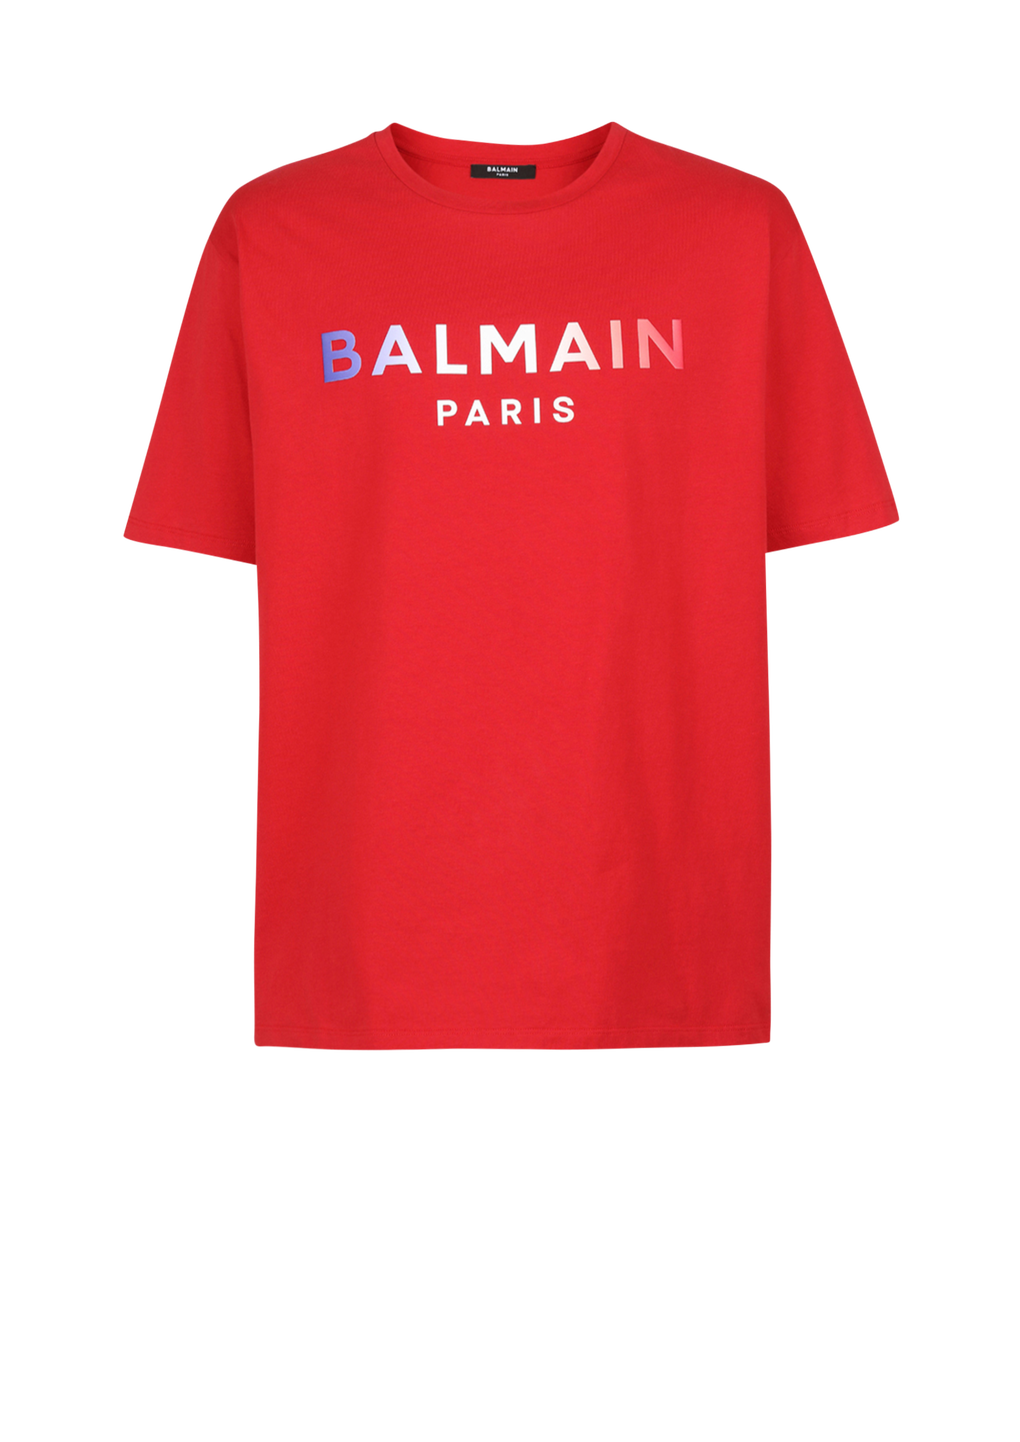 HIGH SUMMER CAPSULE - T-shirt en coton imprimé tie and dye logo Balmain Paris, rouge, hi-res